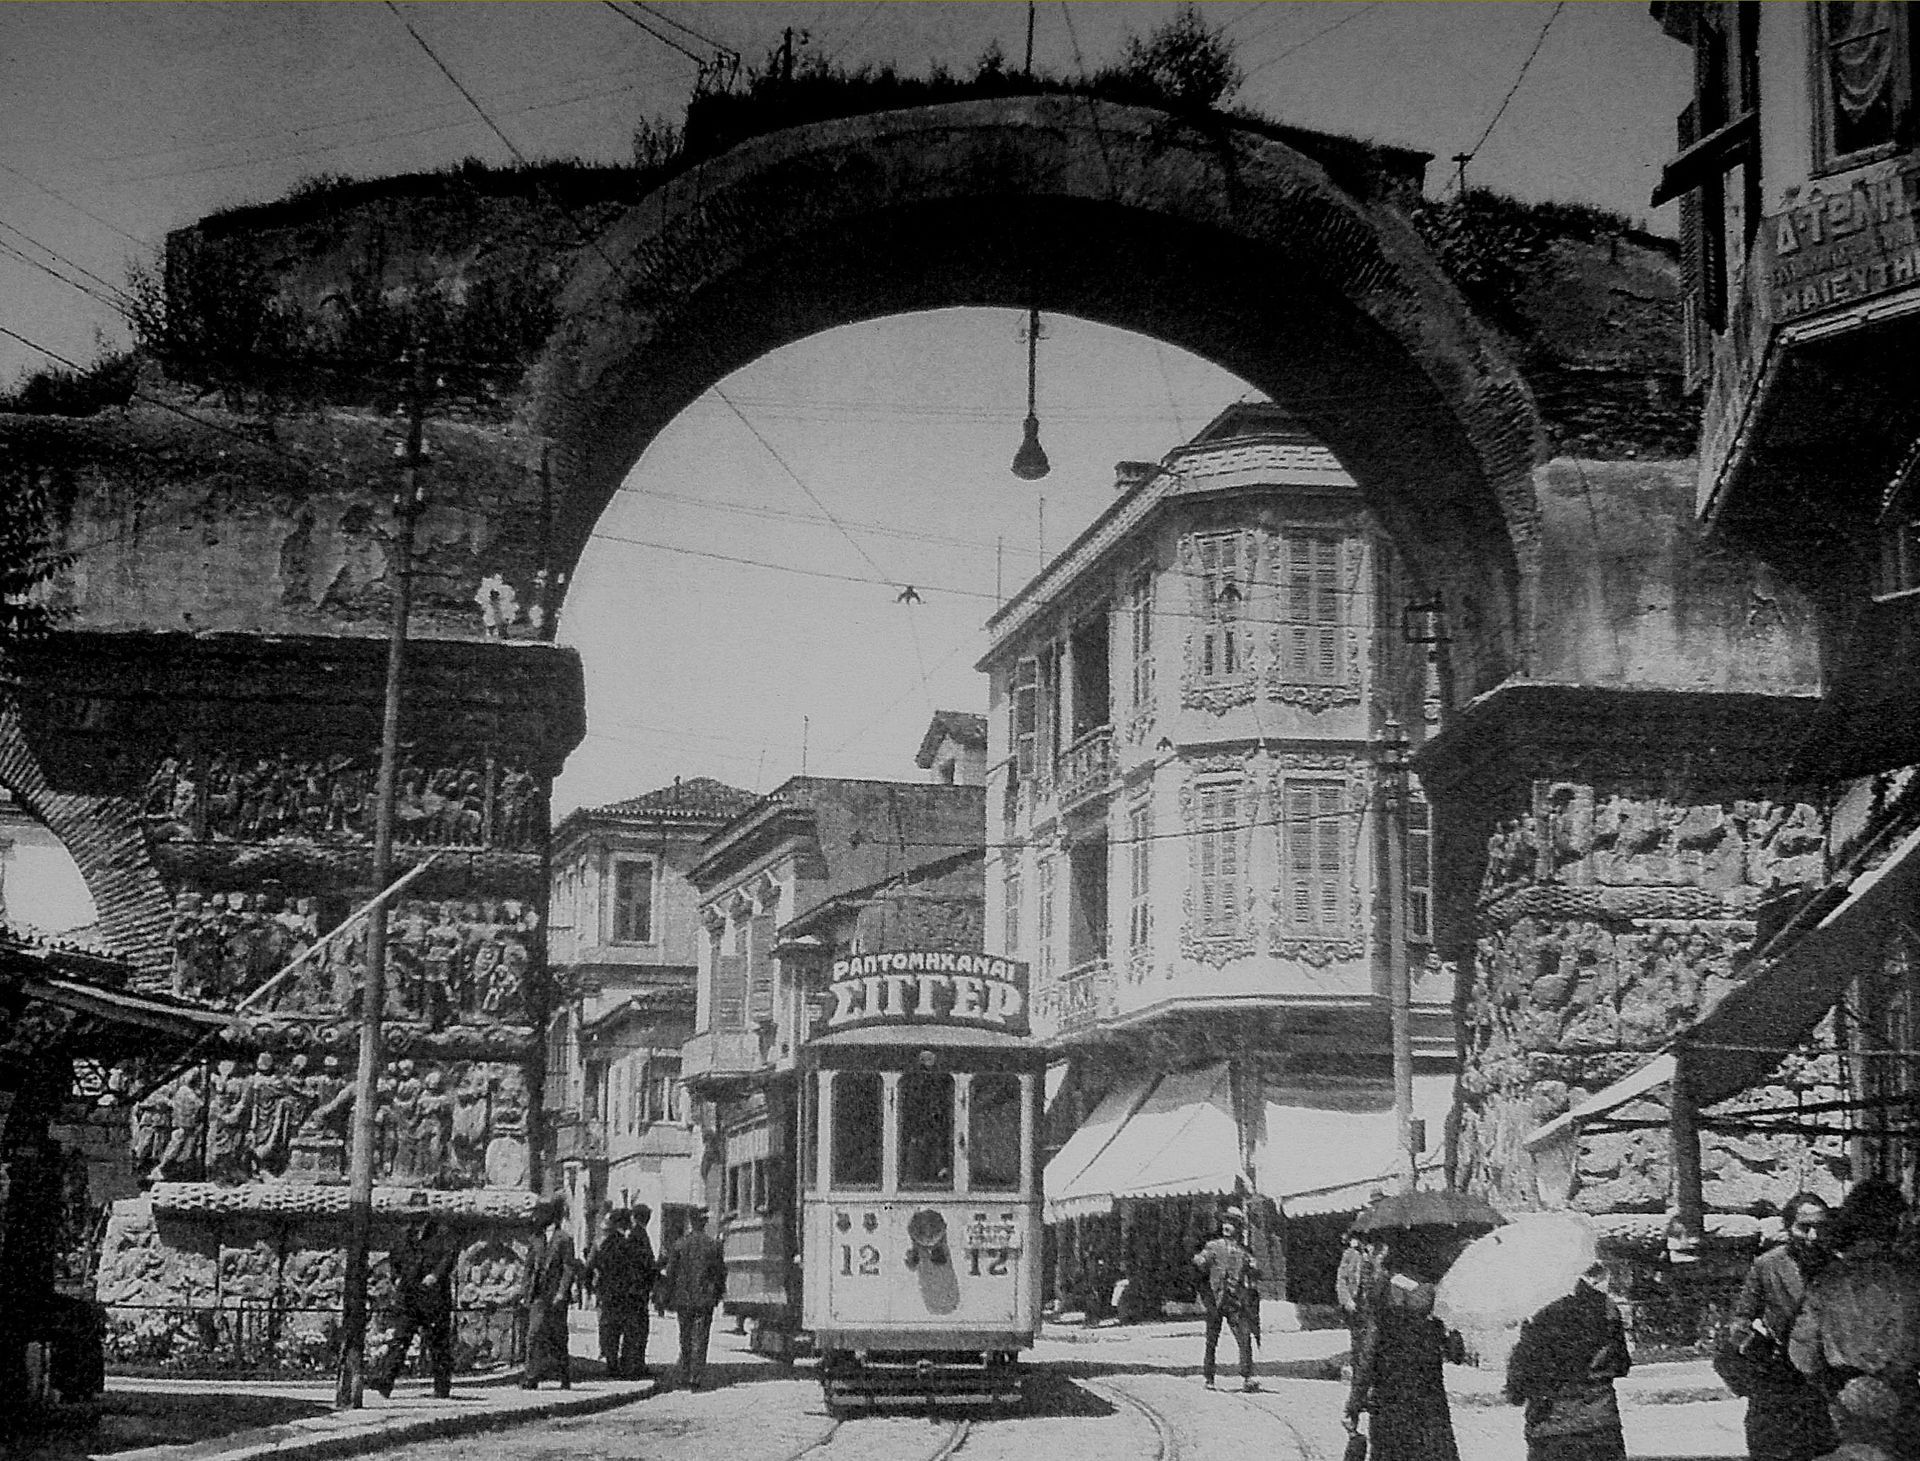 Galeriusbogen Thessaloniki 1930